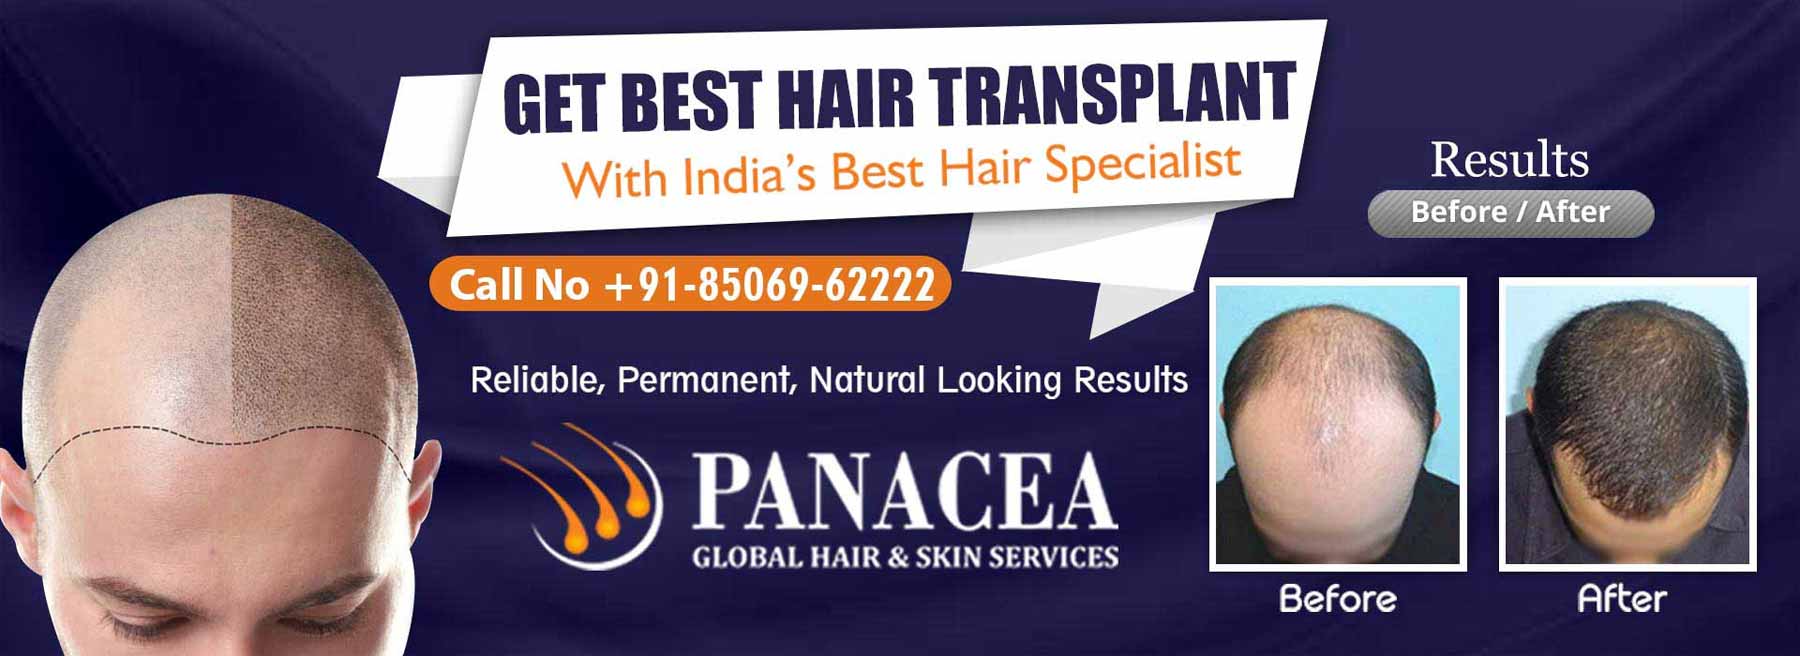 Get Best Hair Transplant - Panacea Global in Gandhi Nagar